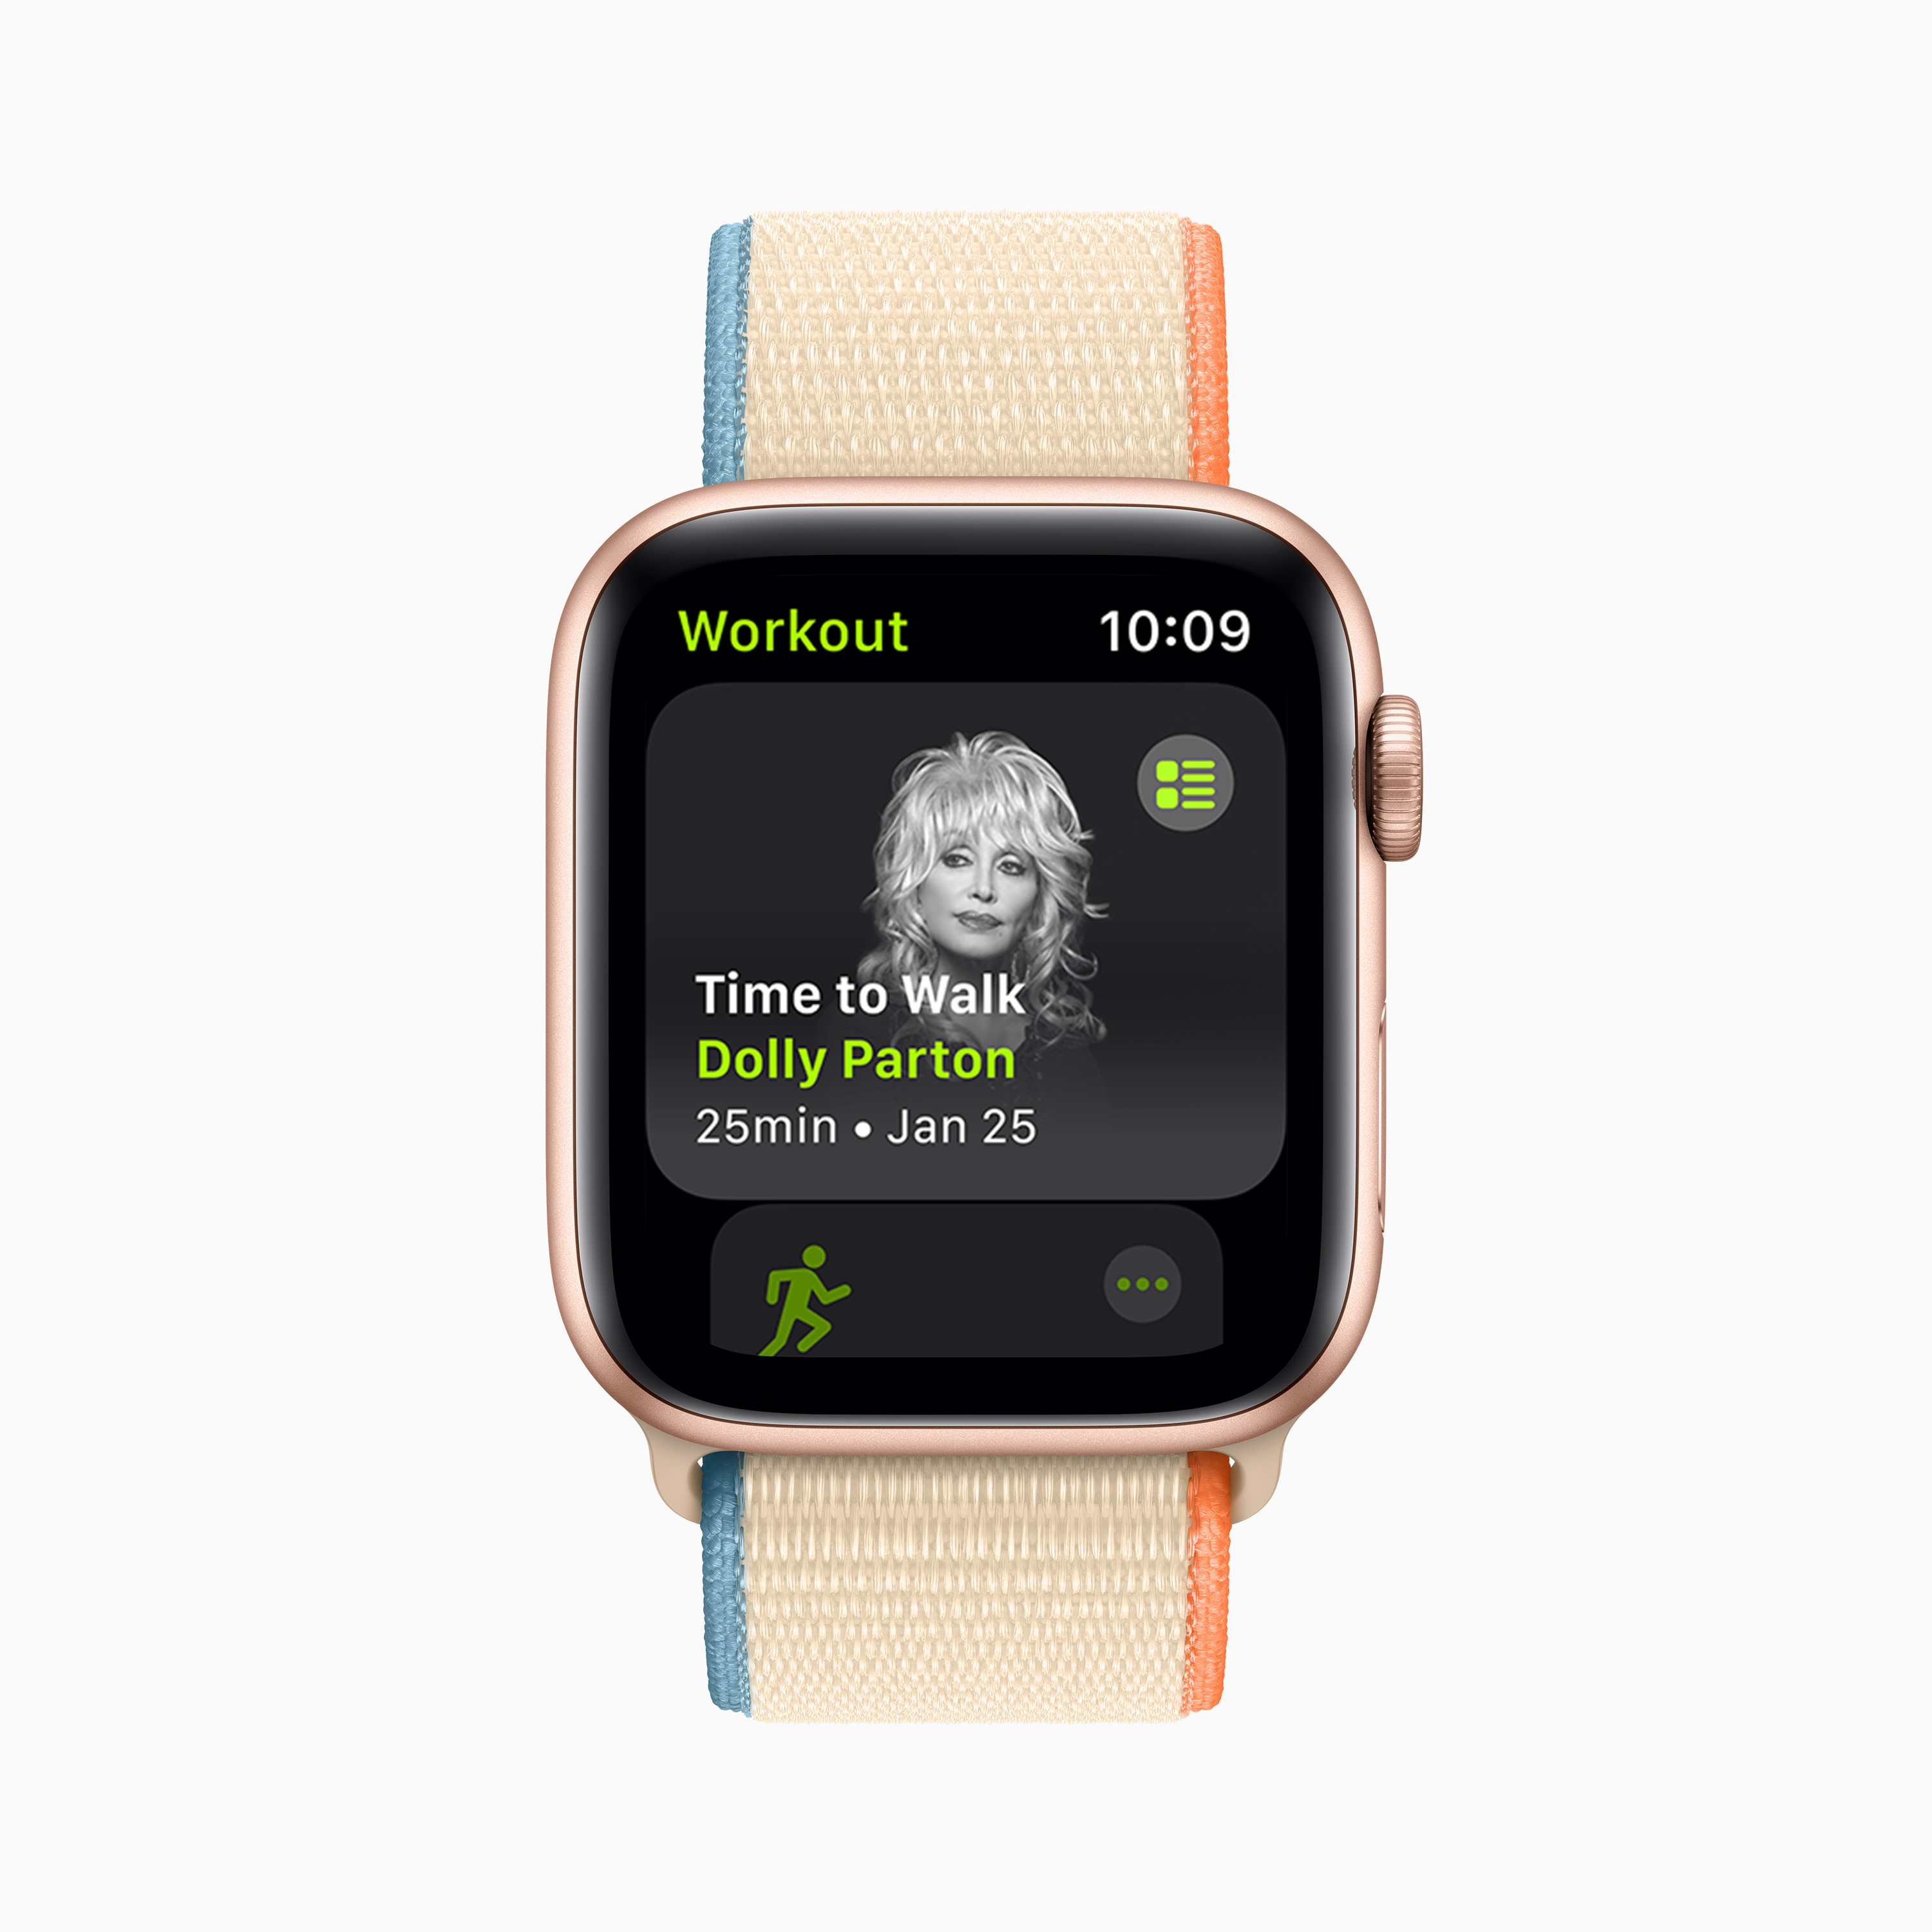 Apple Apple Fitness で新しいオーディオウォーキング体験 Time To Walk の提供開始 Itmedia News